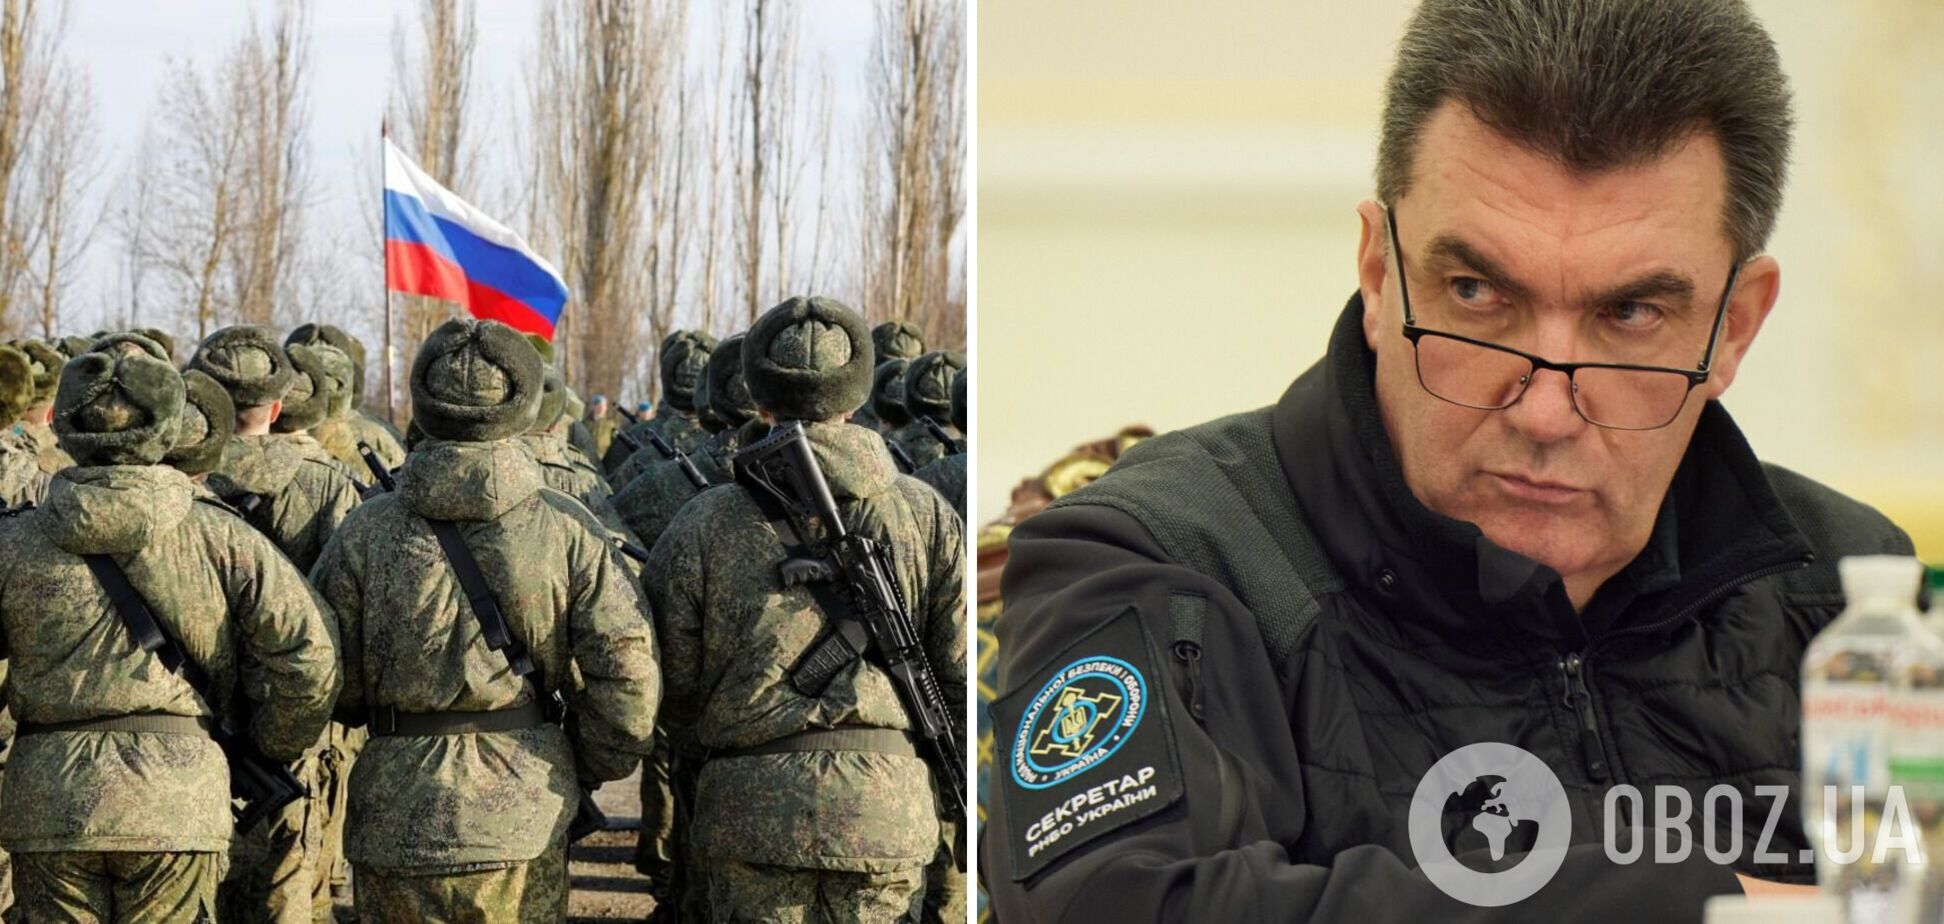 Данілов: армія РФ через санкції отримує зброю зниженої якості і точності